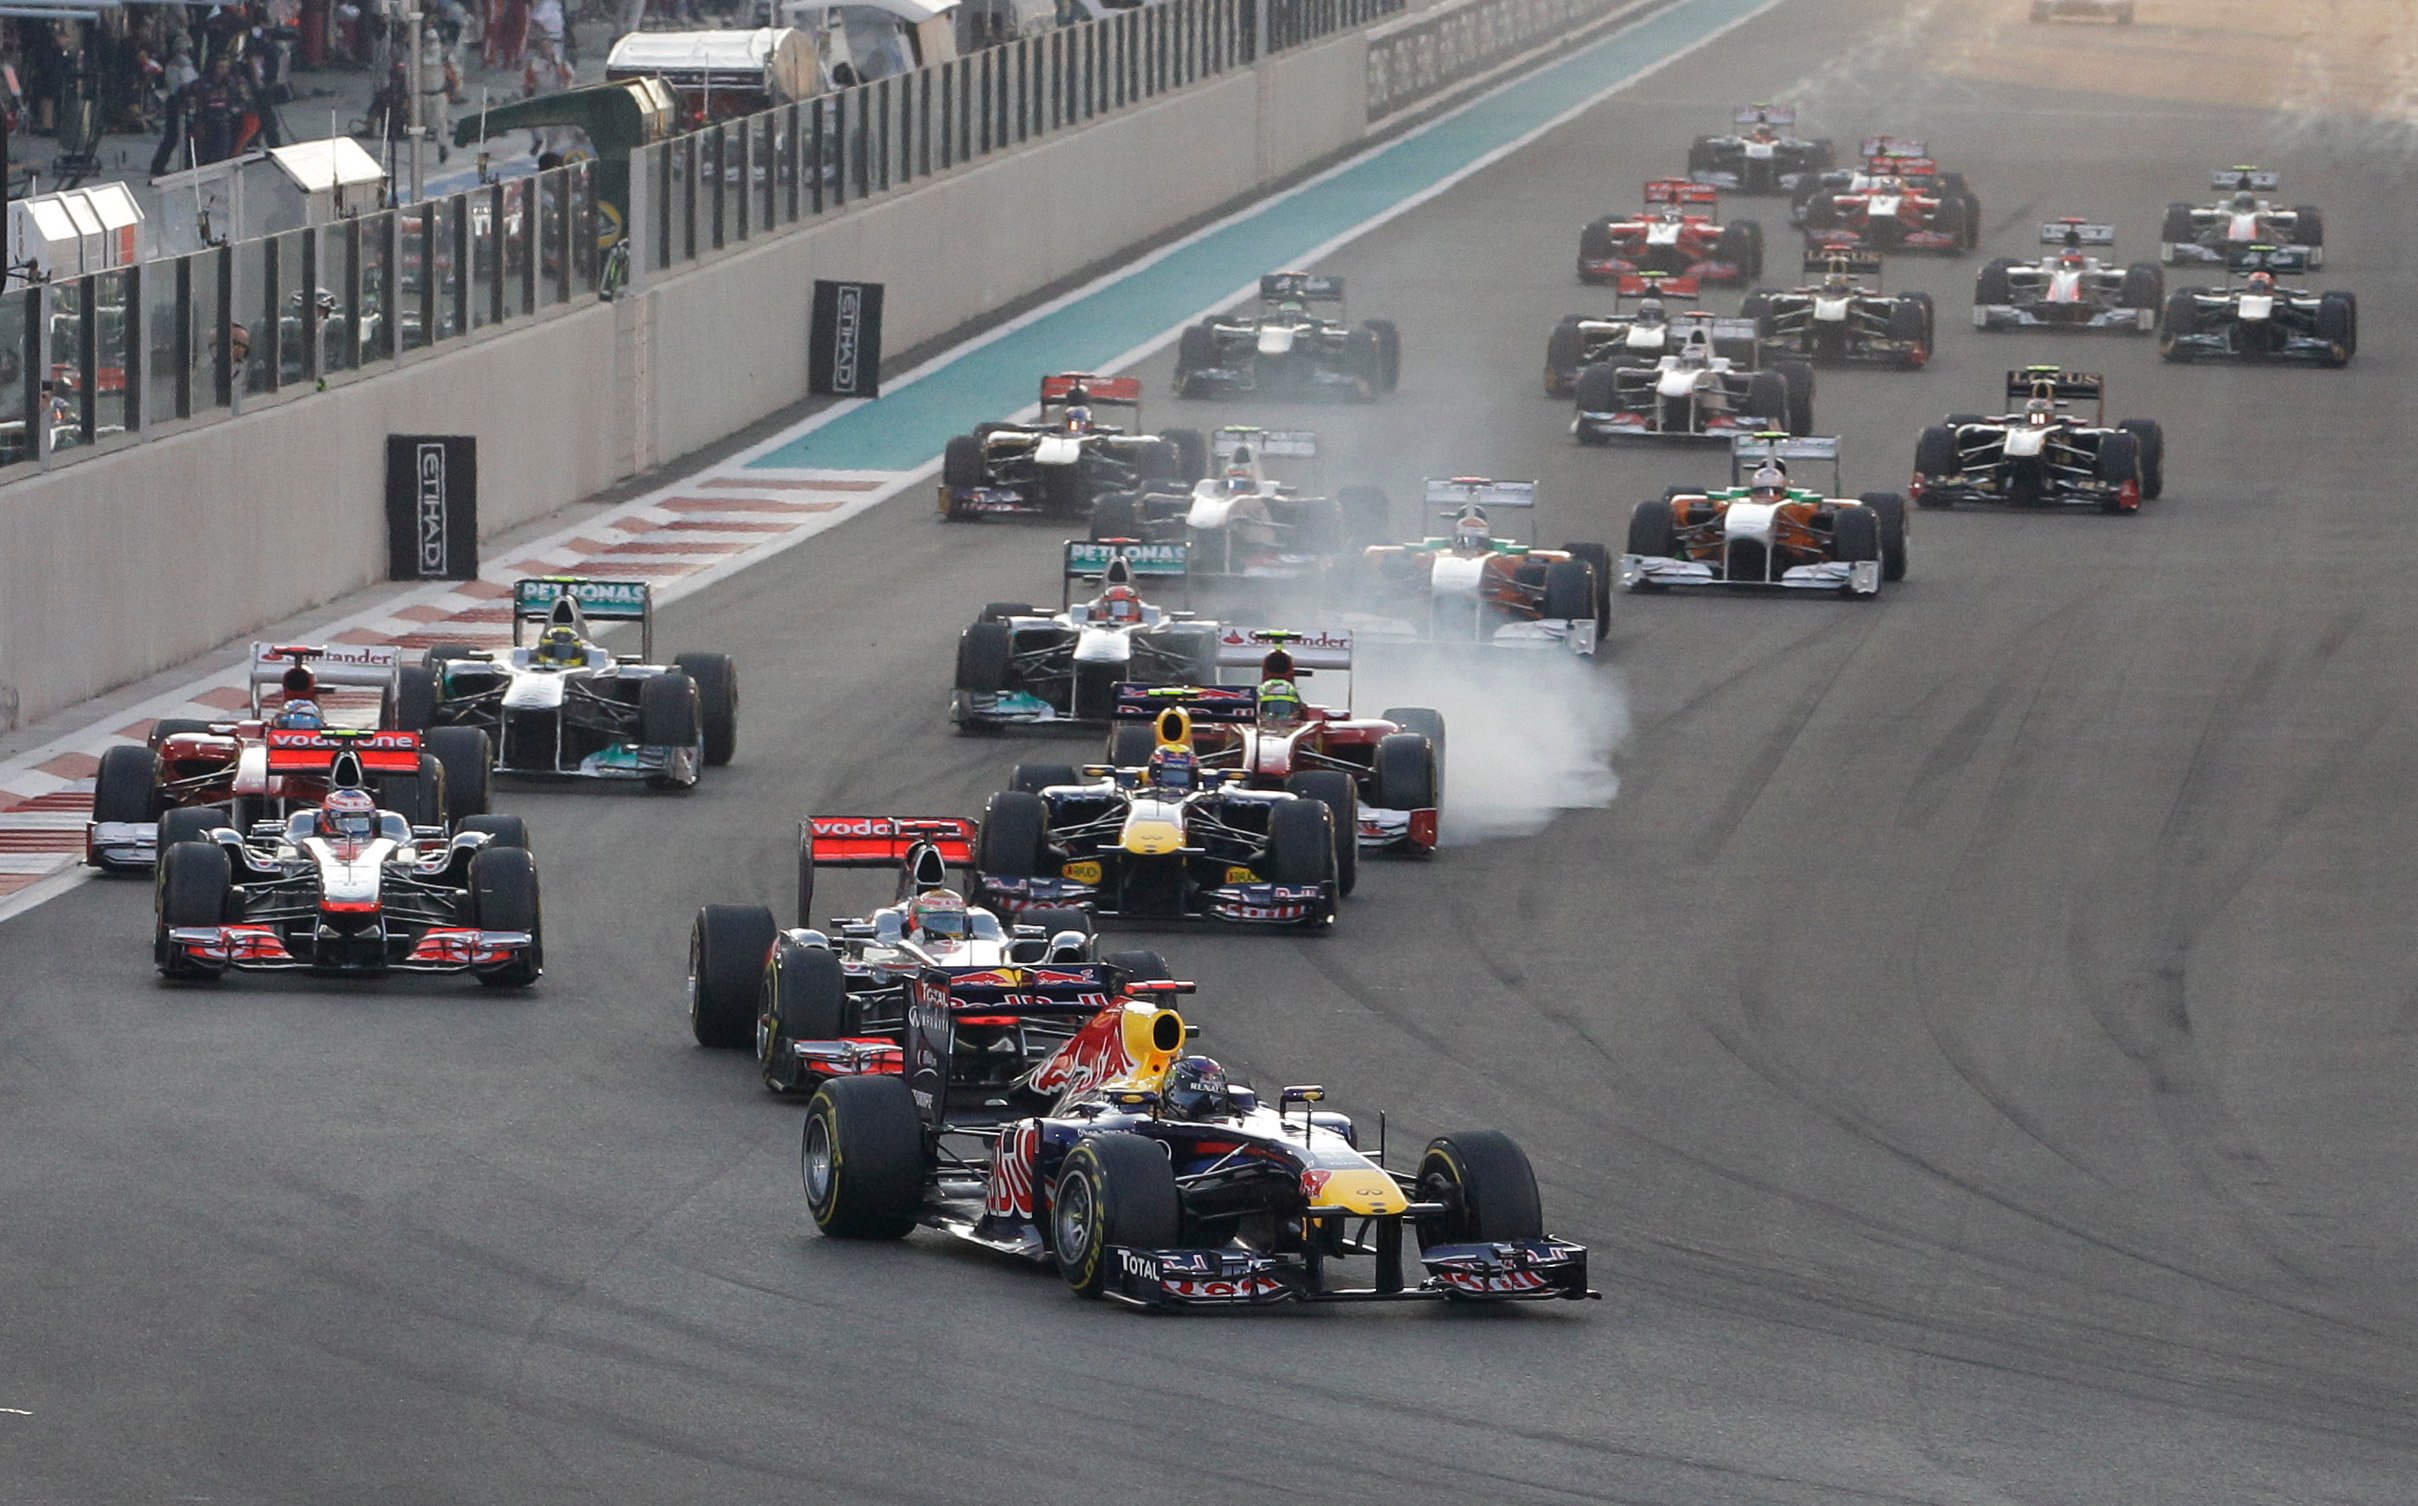 Formel 1, Fernando Alonso, Nigel Mansell, Sebastian Vettel, Red Bull, Mark Webber, Lewis Hamilton, Abu Dhabi, Jenson Button